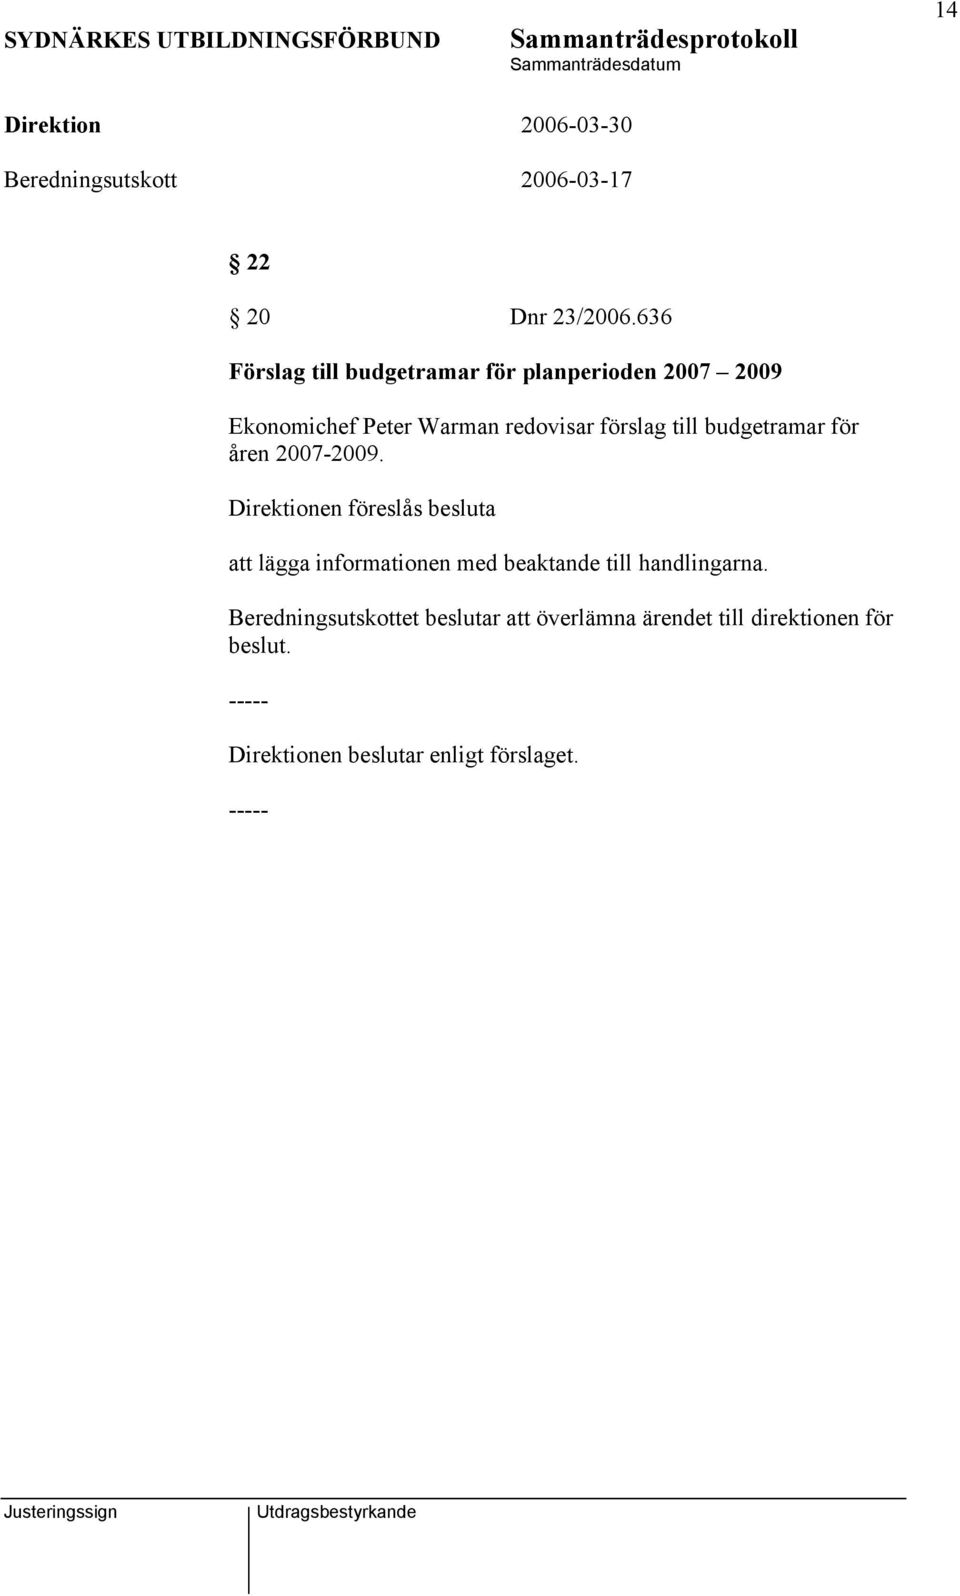 förslag till budgetramar för åren 2007-2009.